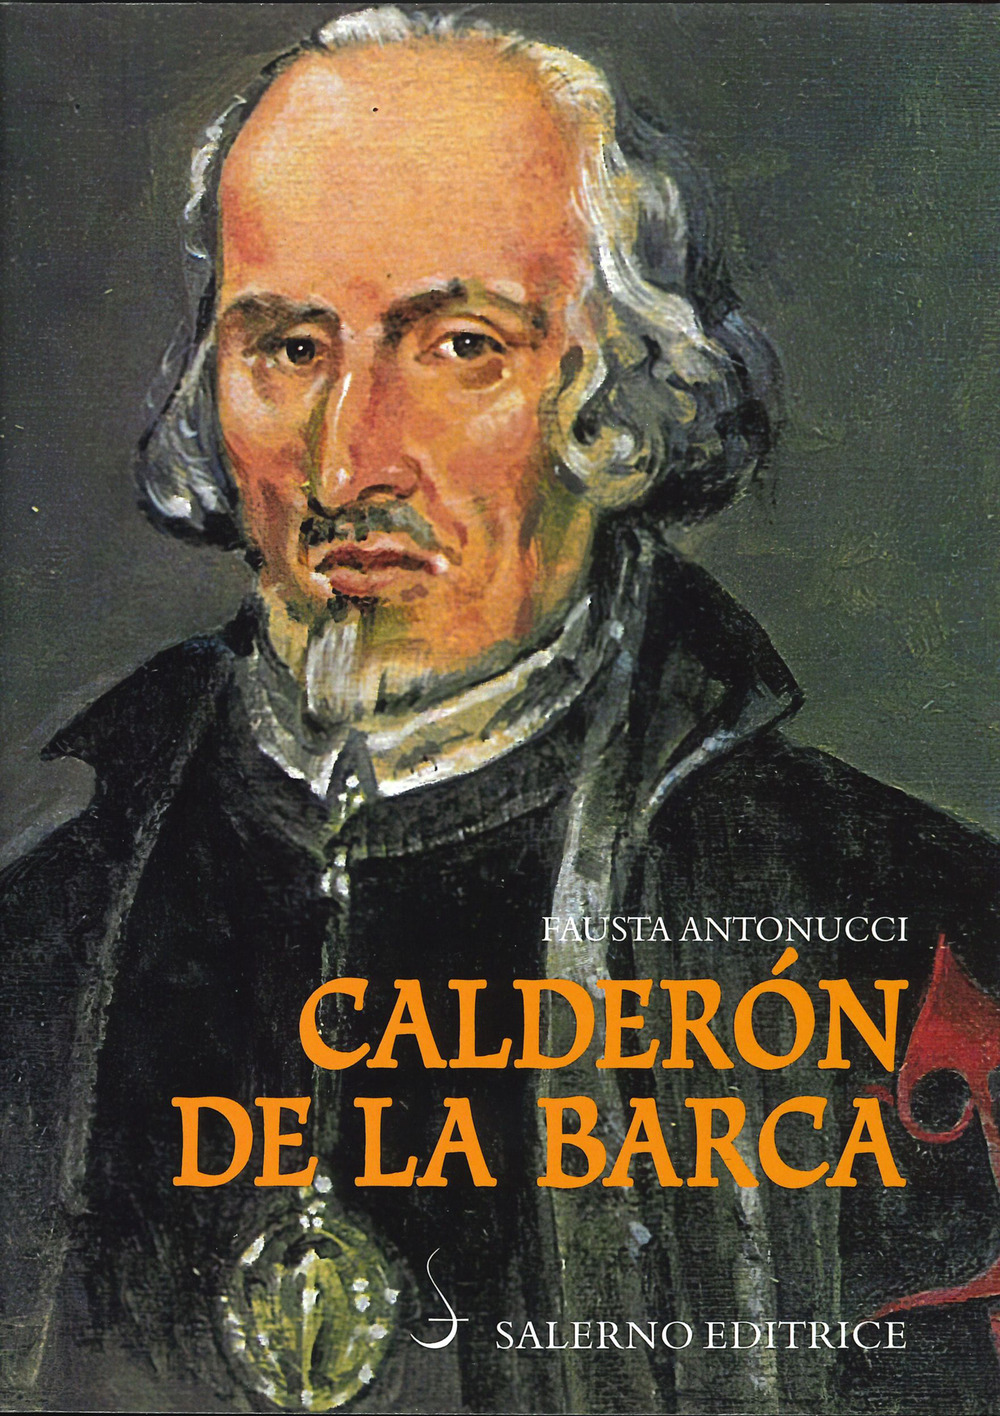 Libri Fausta Antonucci - Calderon De La Barca NUOVO SIGILLATO, EDIZIONE DEL 28/01/2021 SUBITO DISPONIBILE